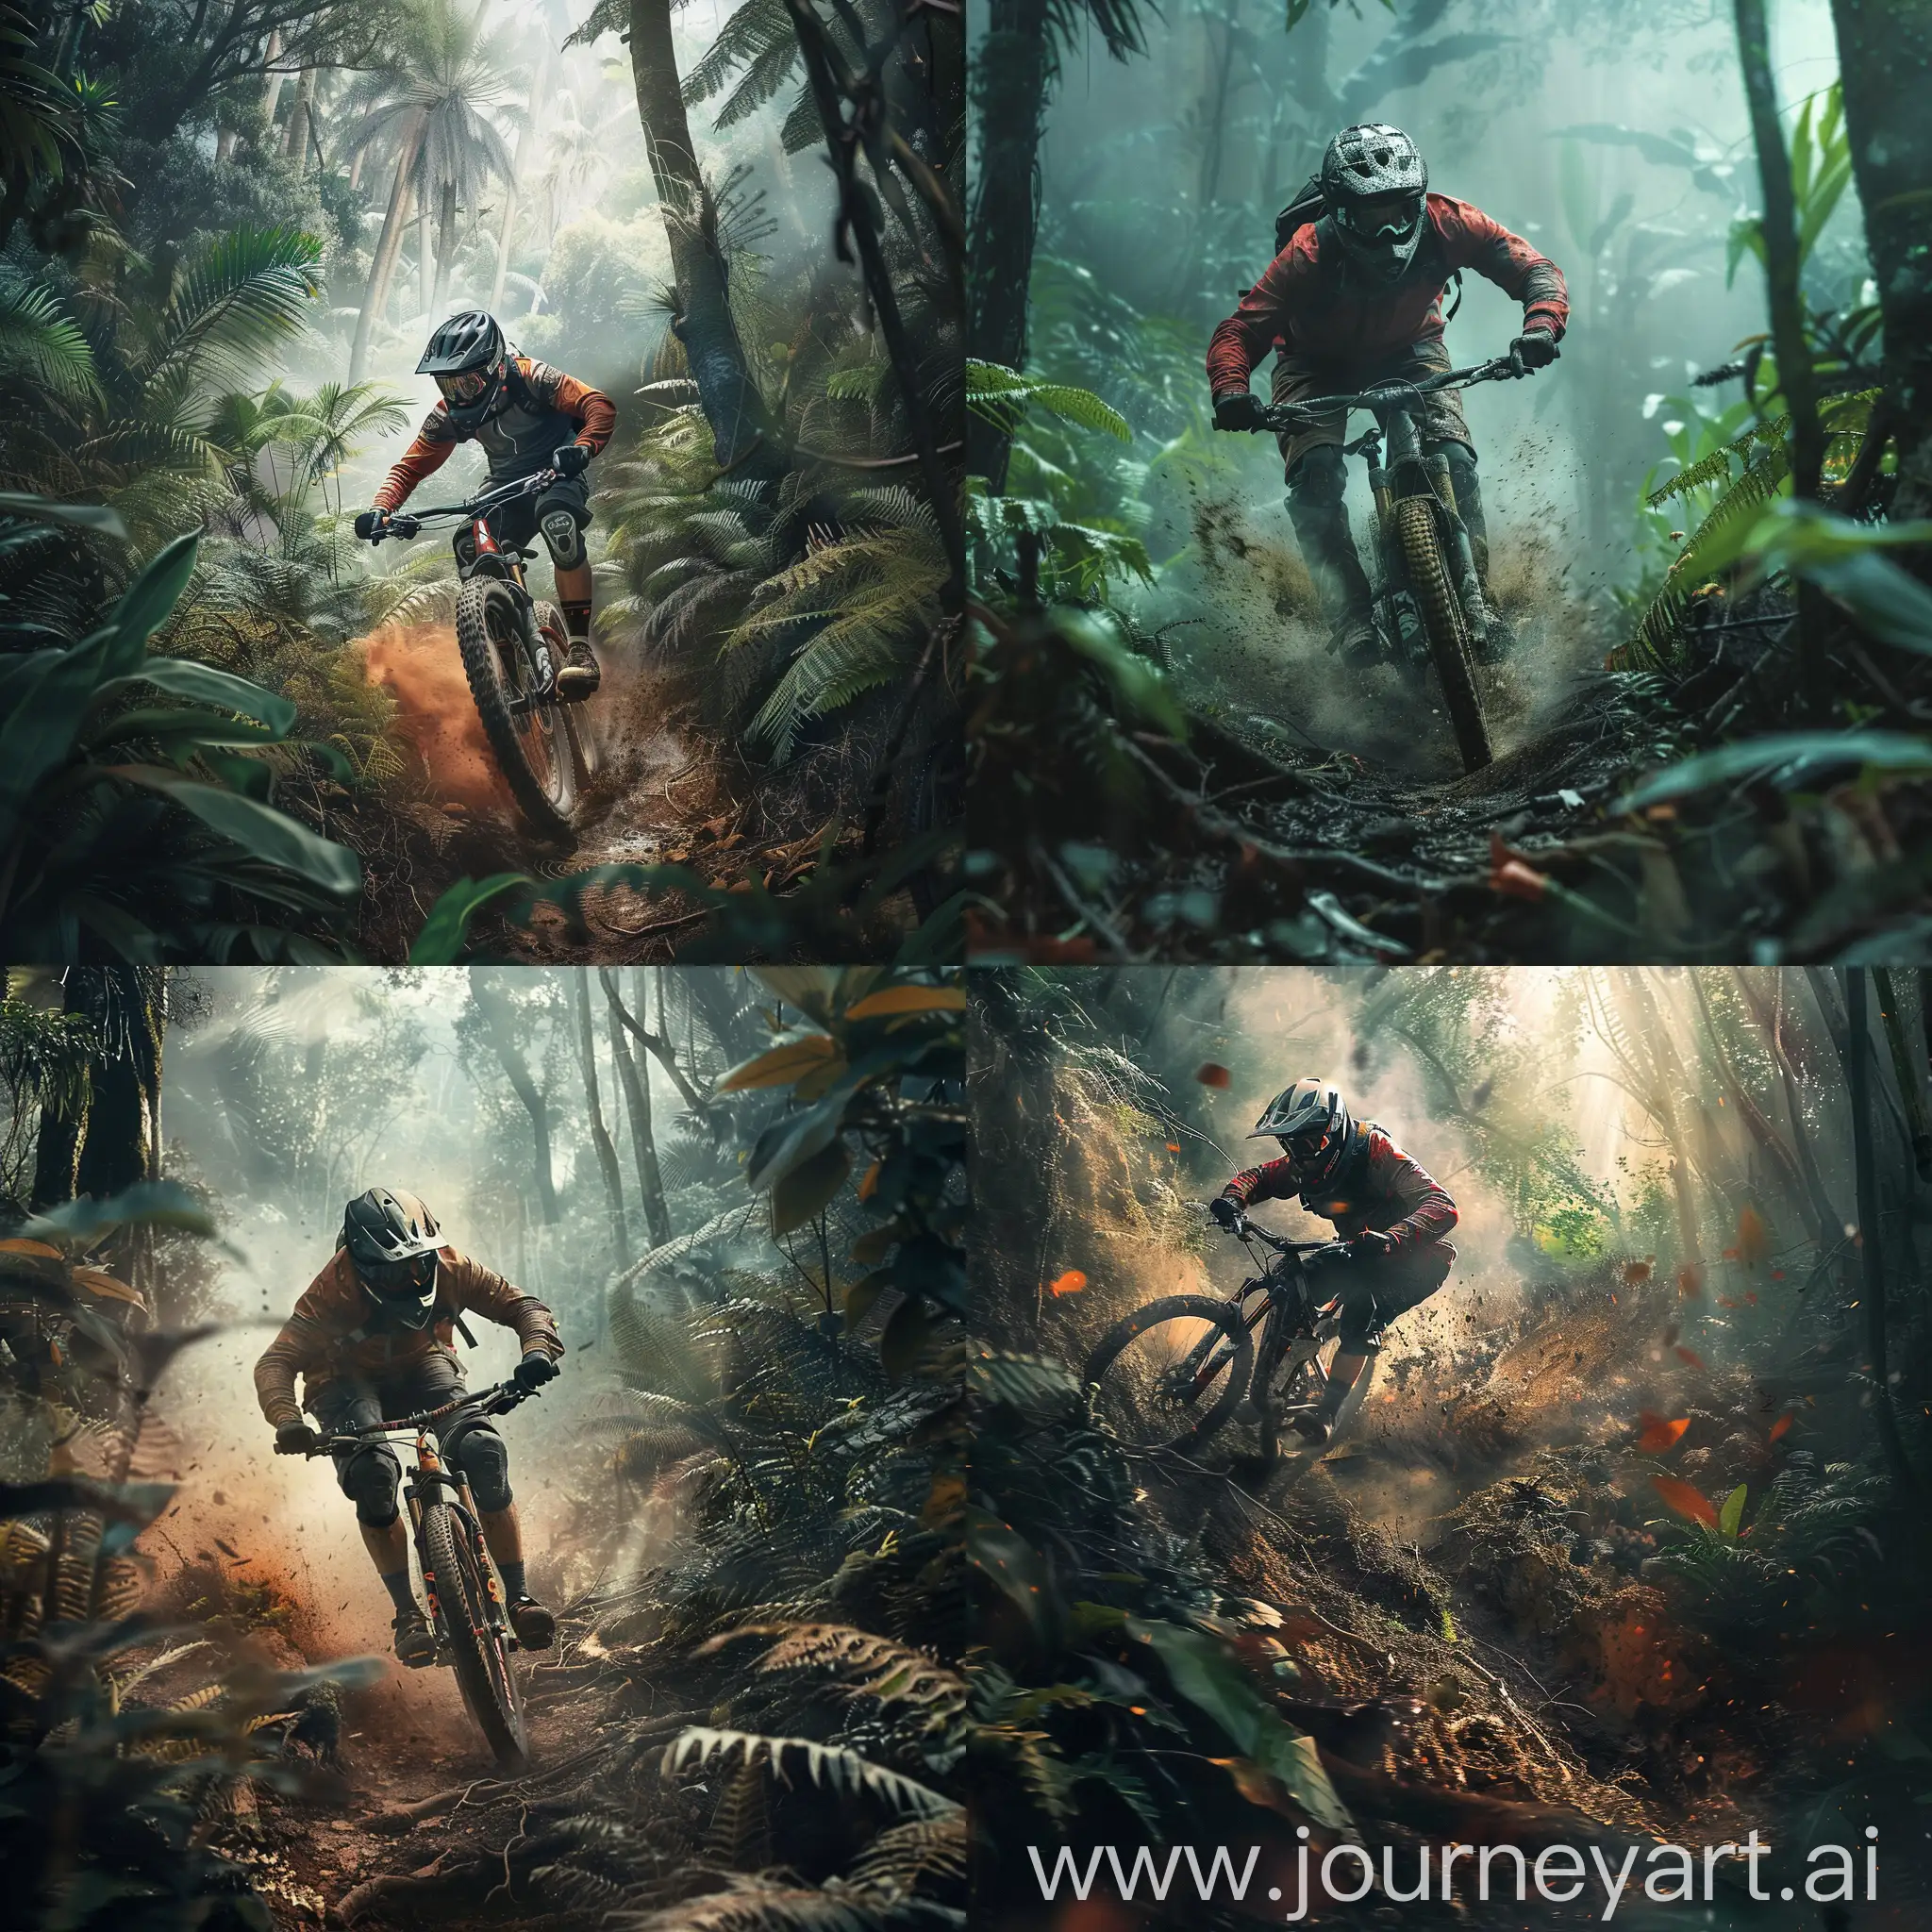 Intense-Mountain-Biking-Through-Misty-Forest-Trail